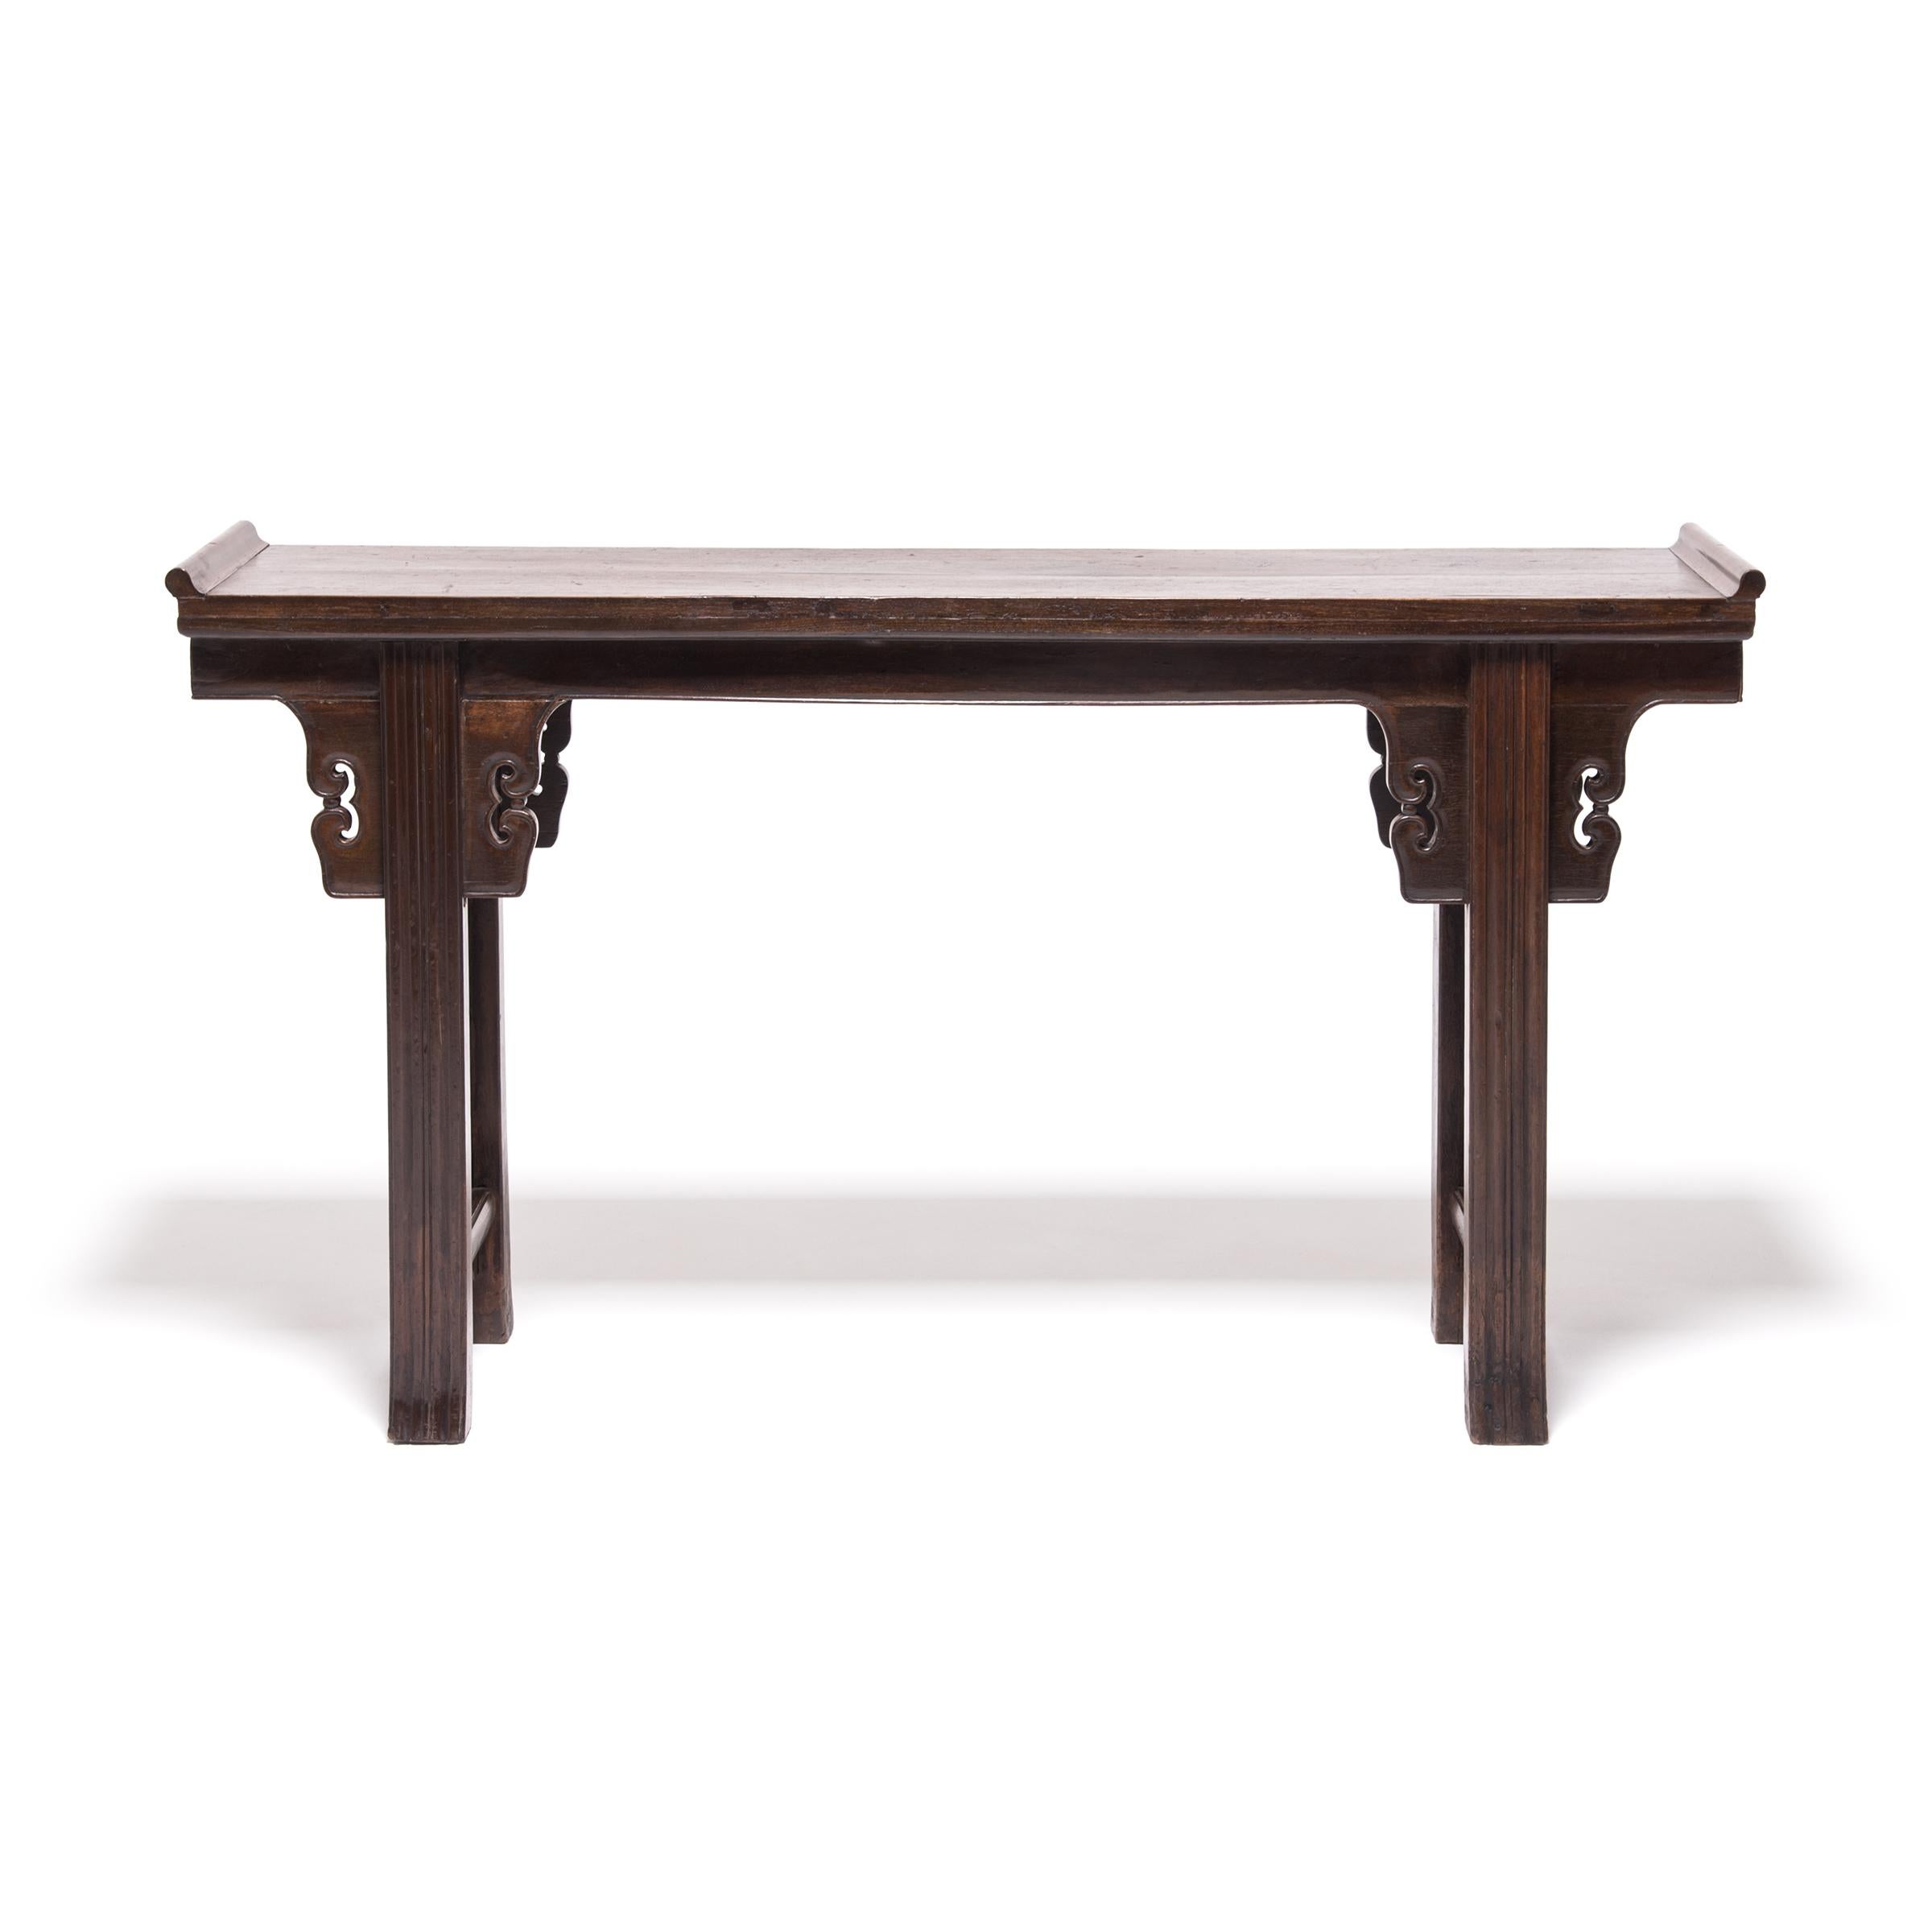 Cette élégante table console a été fabriquée il y a 150 ans dans la province chinoise du Shanxi et servait probablement d'autel à une famille qui rendait hommage à ses ancêtres vénérés. La table d'autel est fabriquée en bois dur de qualité avec des